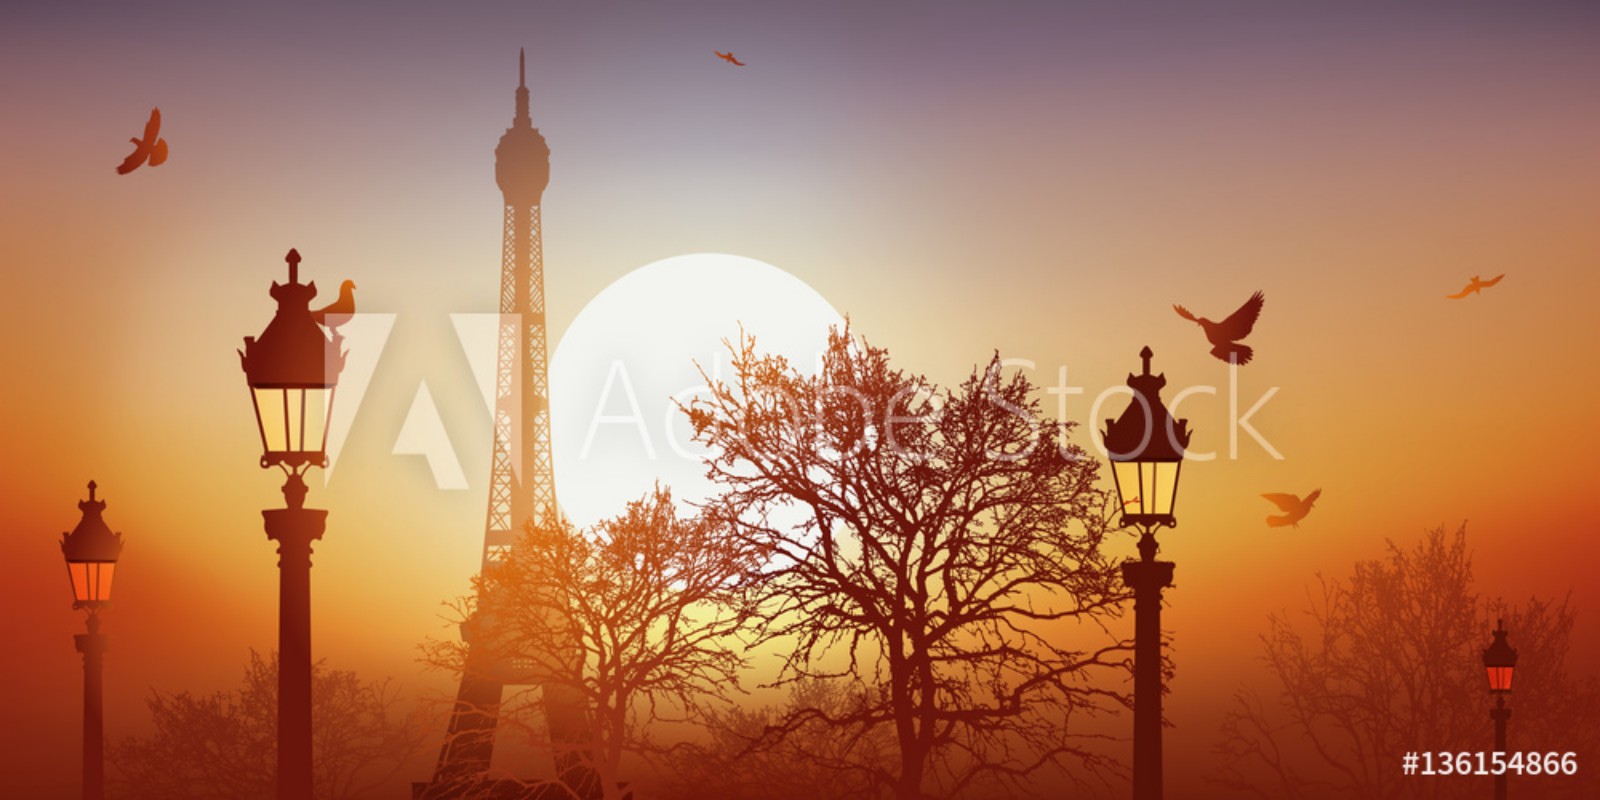 Afbeeldingen van Tour Eiffel - Champ de Mars - Coucher de soleil - Pigeon